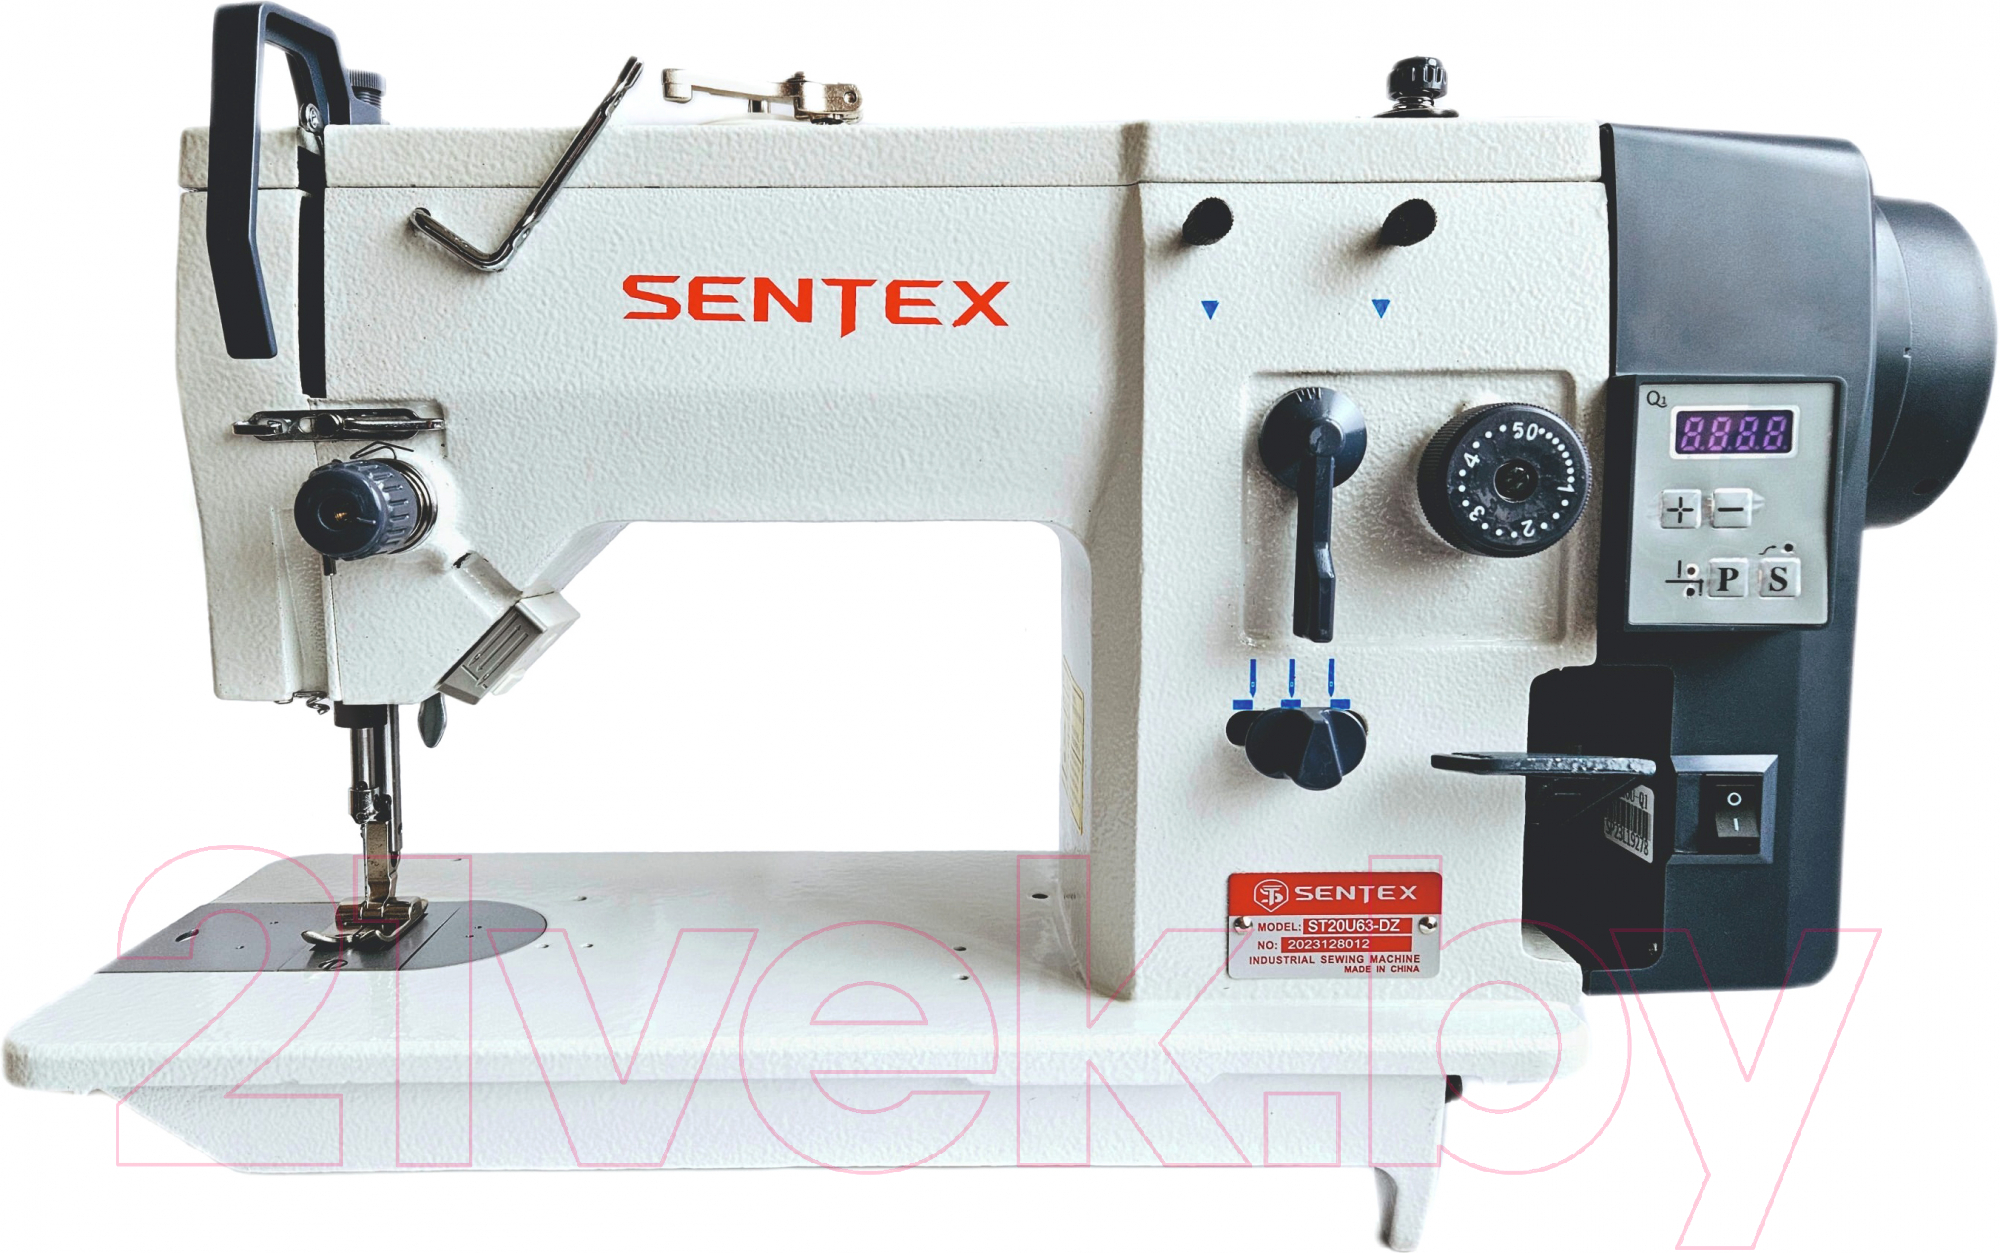 Промышленная швейная машина Sentex ST20U53-DZ